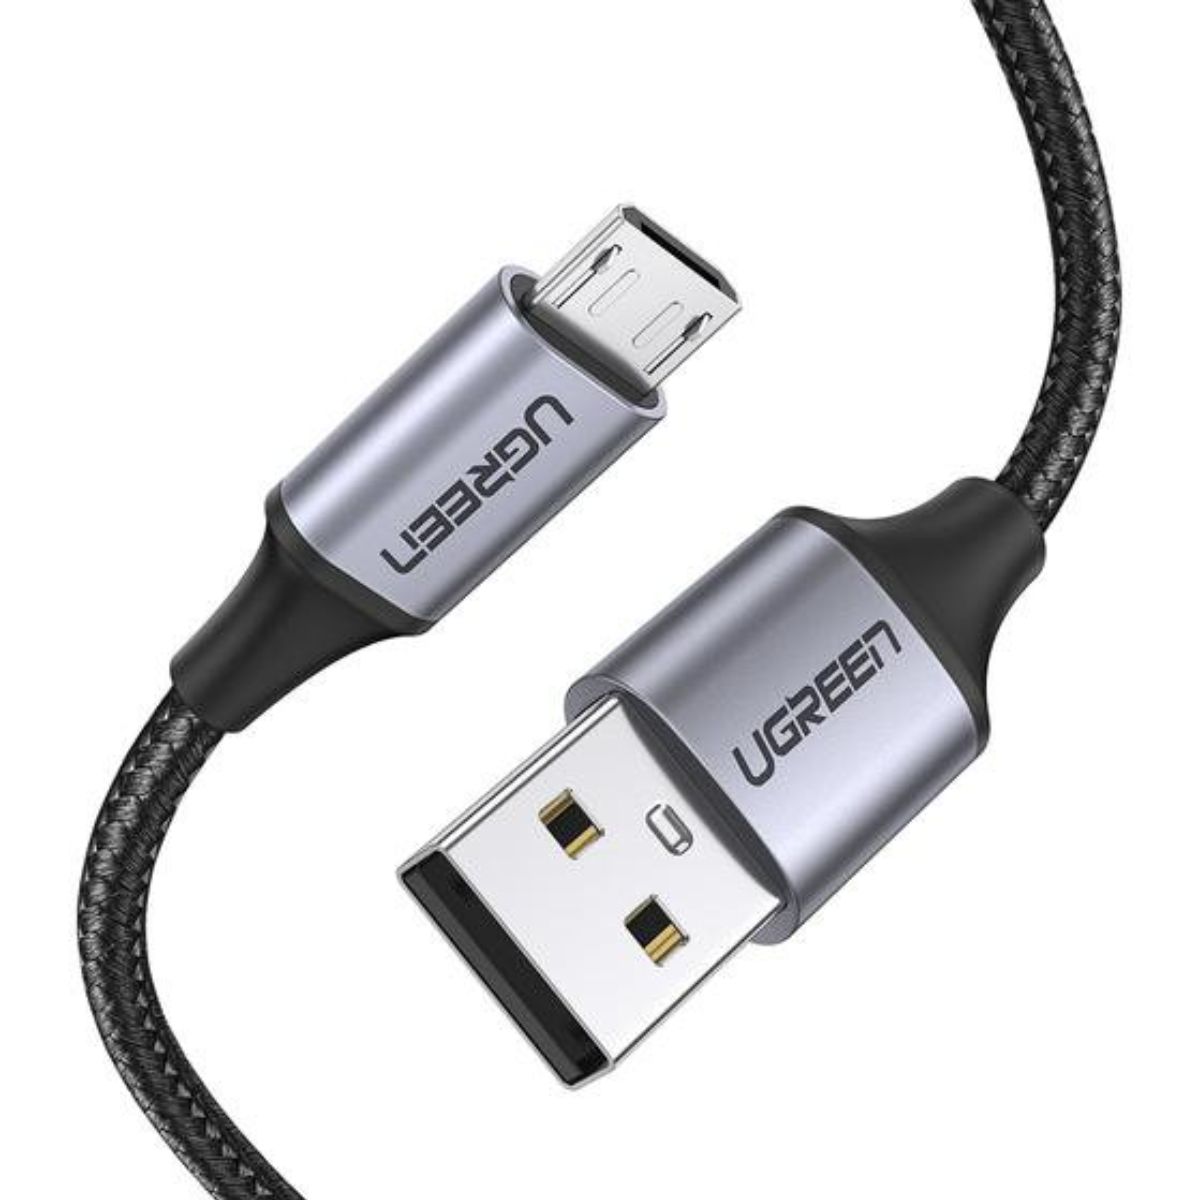 Cáp sạc Micro USB dài 2m Ugreen 60148 US290 màu đen, mạ nikem bện nhôm